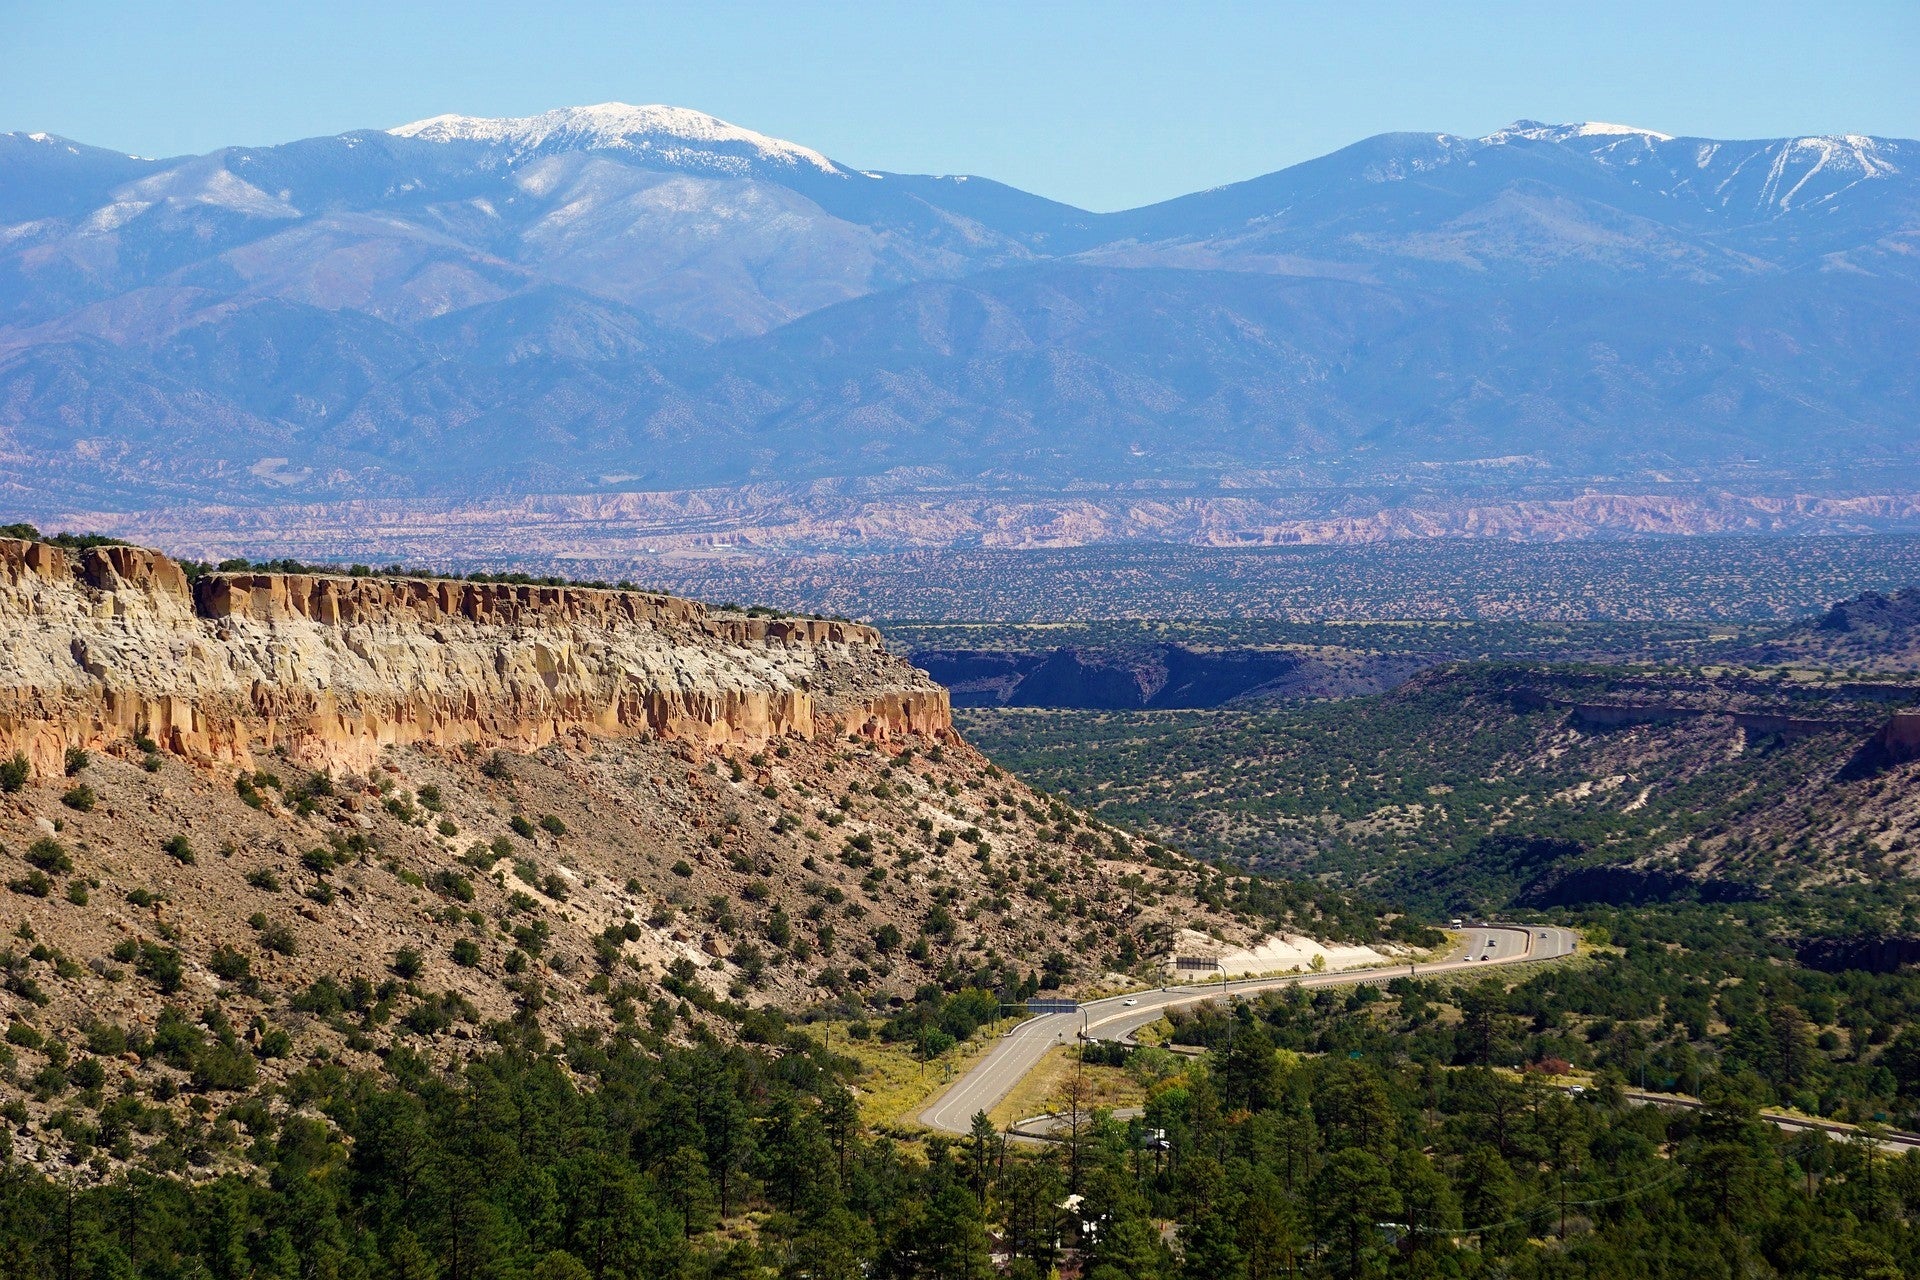 New Mexico mountains